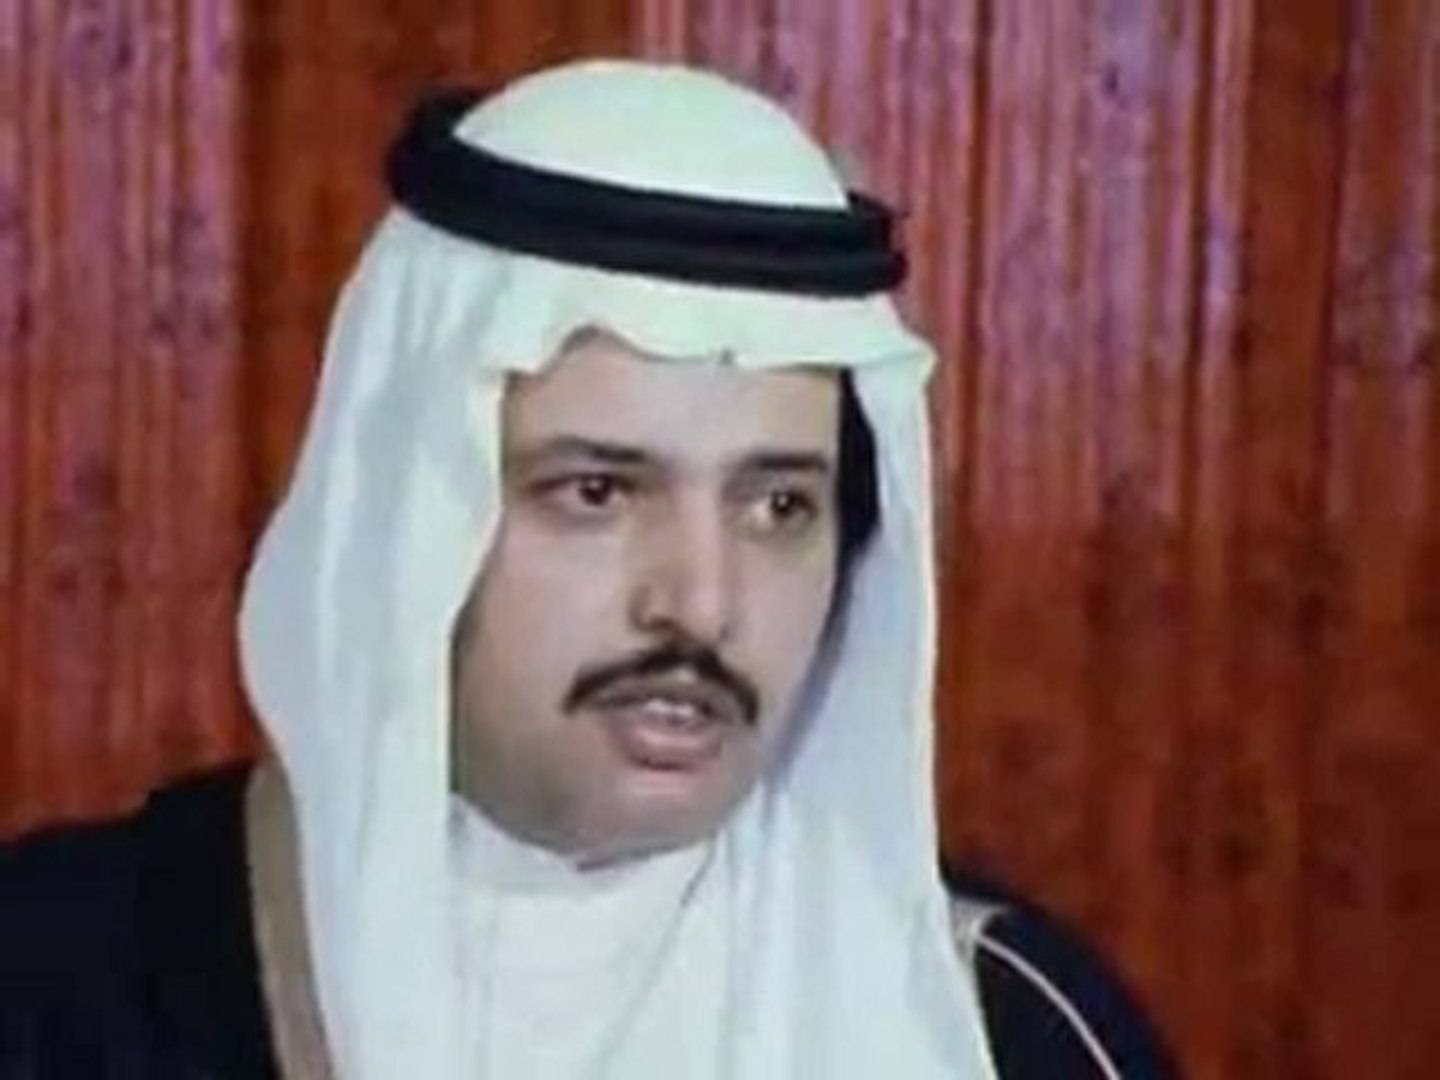 فيديو نادر لإغتيال الملك فيصل وي شاهد الأمير سلطان يحمل النعش على كتفه فيديو Dailymotion